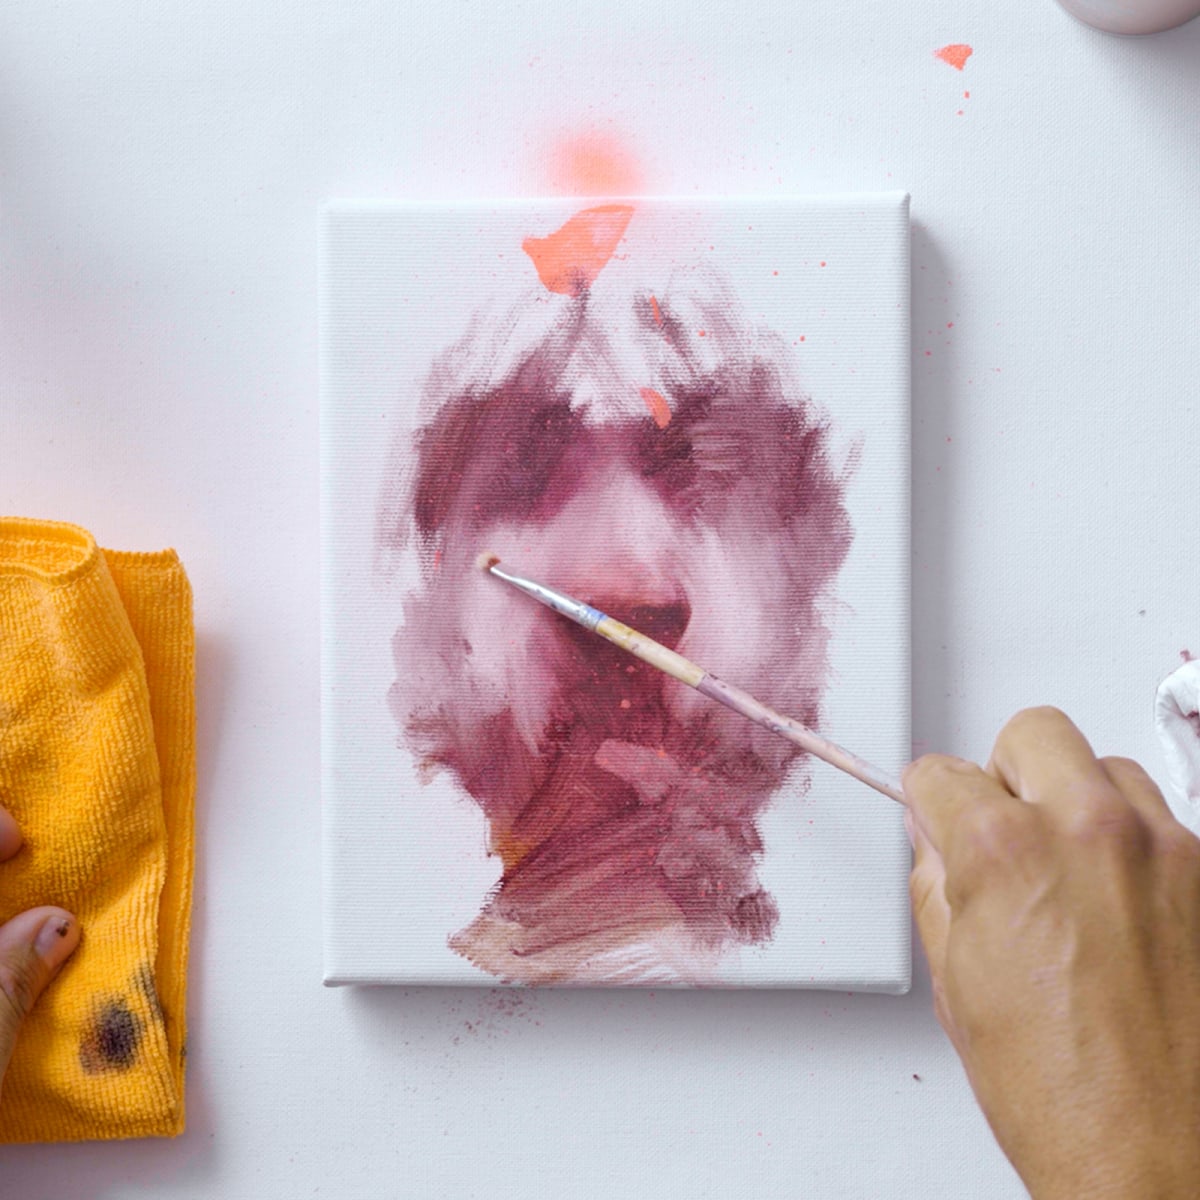 Pintura al óleo: tutorial para comenzar a crear tus obras - Artel